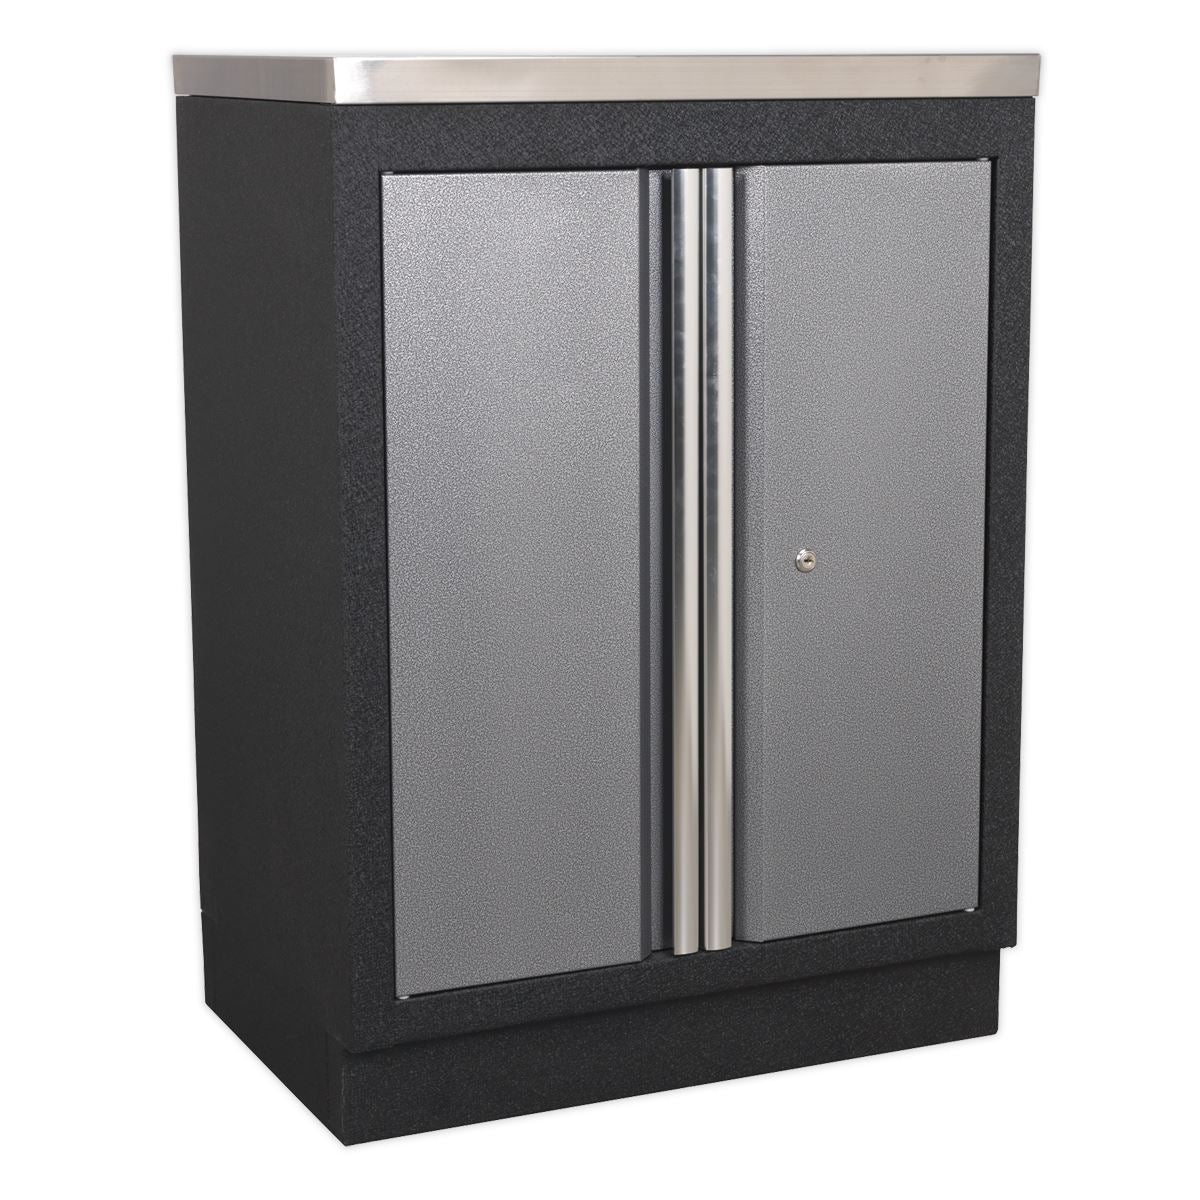 Sealey Superline Pro Modular 2 Door Floor Cabinet 680mm